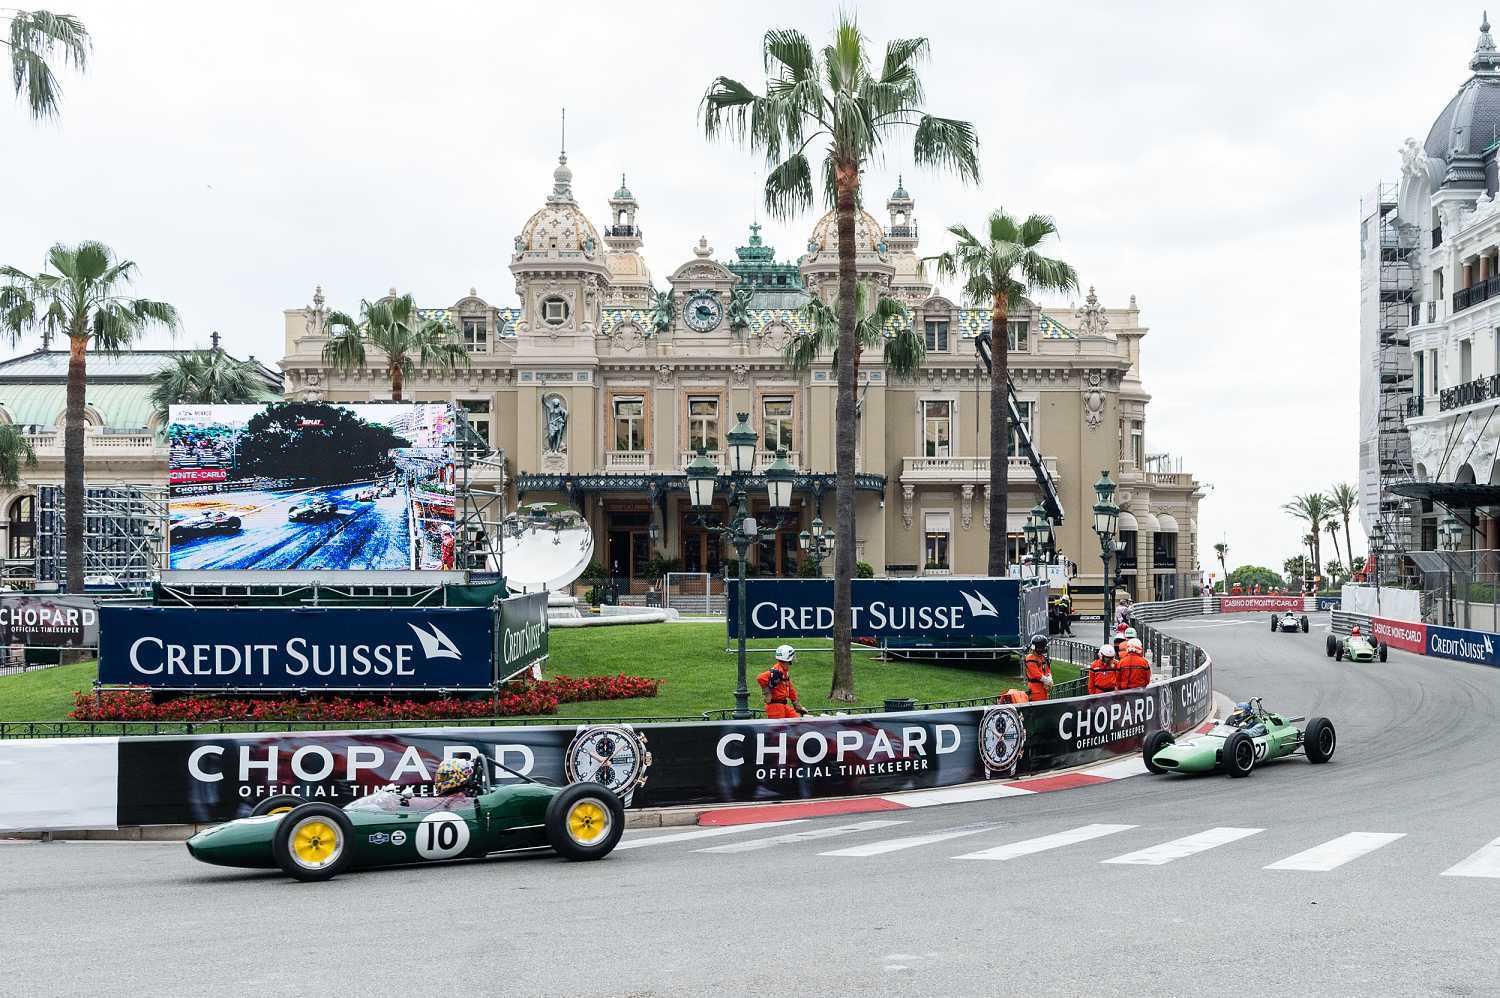 Chopard oficiální časomíra Grand Prix de Monaco 1 | Tissot PR100 Lady Sport Chic